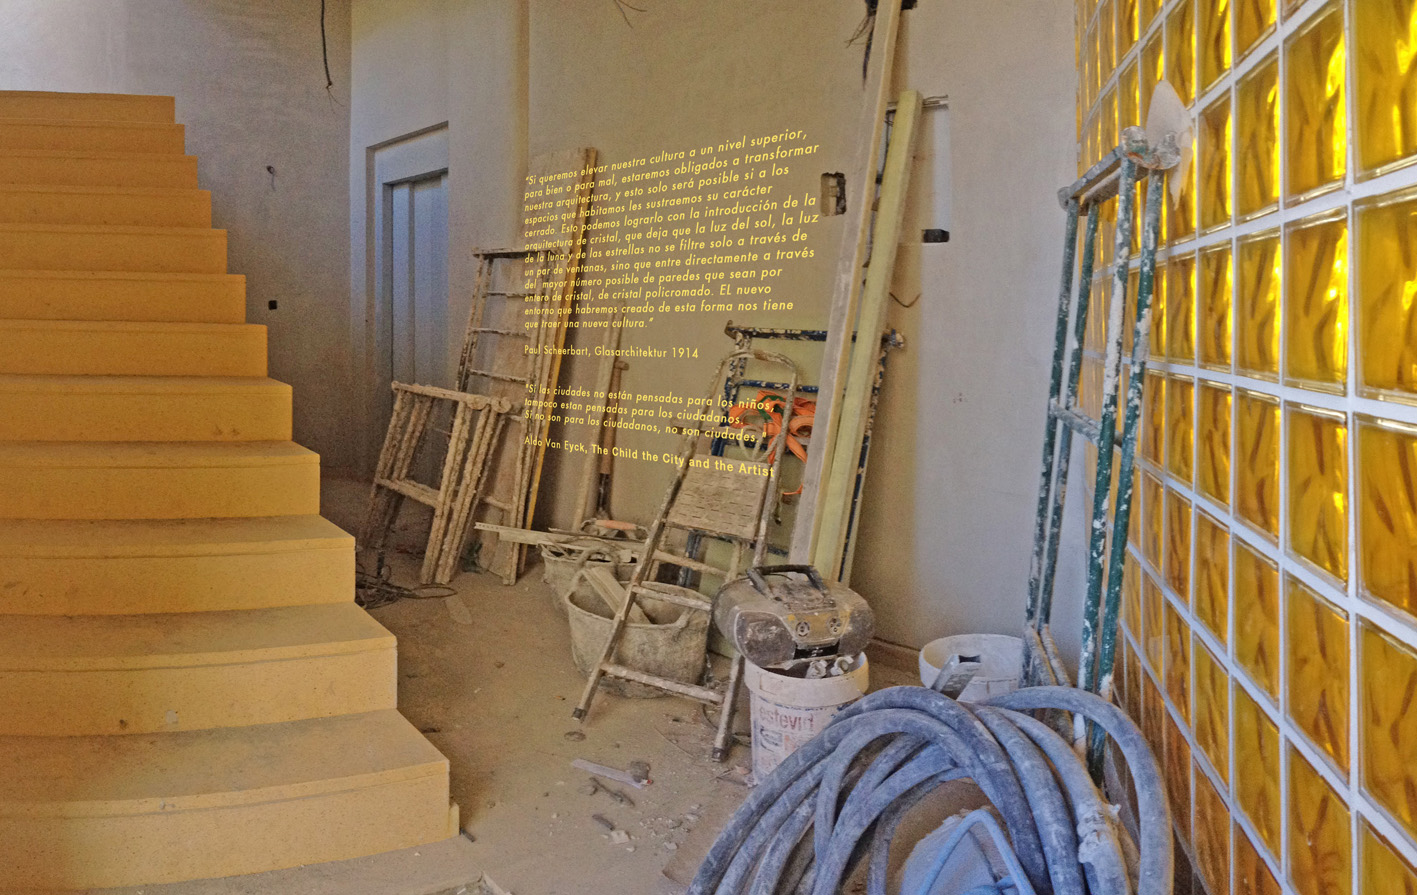 Una pequeña selección de fotografías del proceso de obra - Cooperativa de viviendas Glas Eraikuntza calle Jaén kalea 12, Amezola, BILBAO.